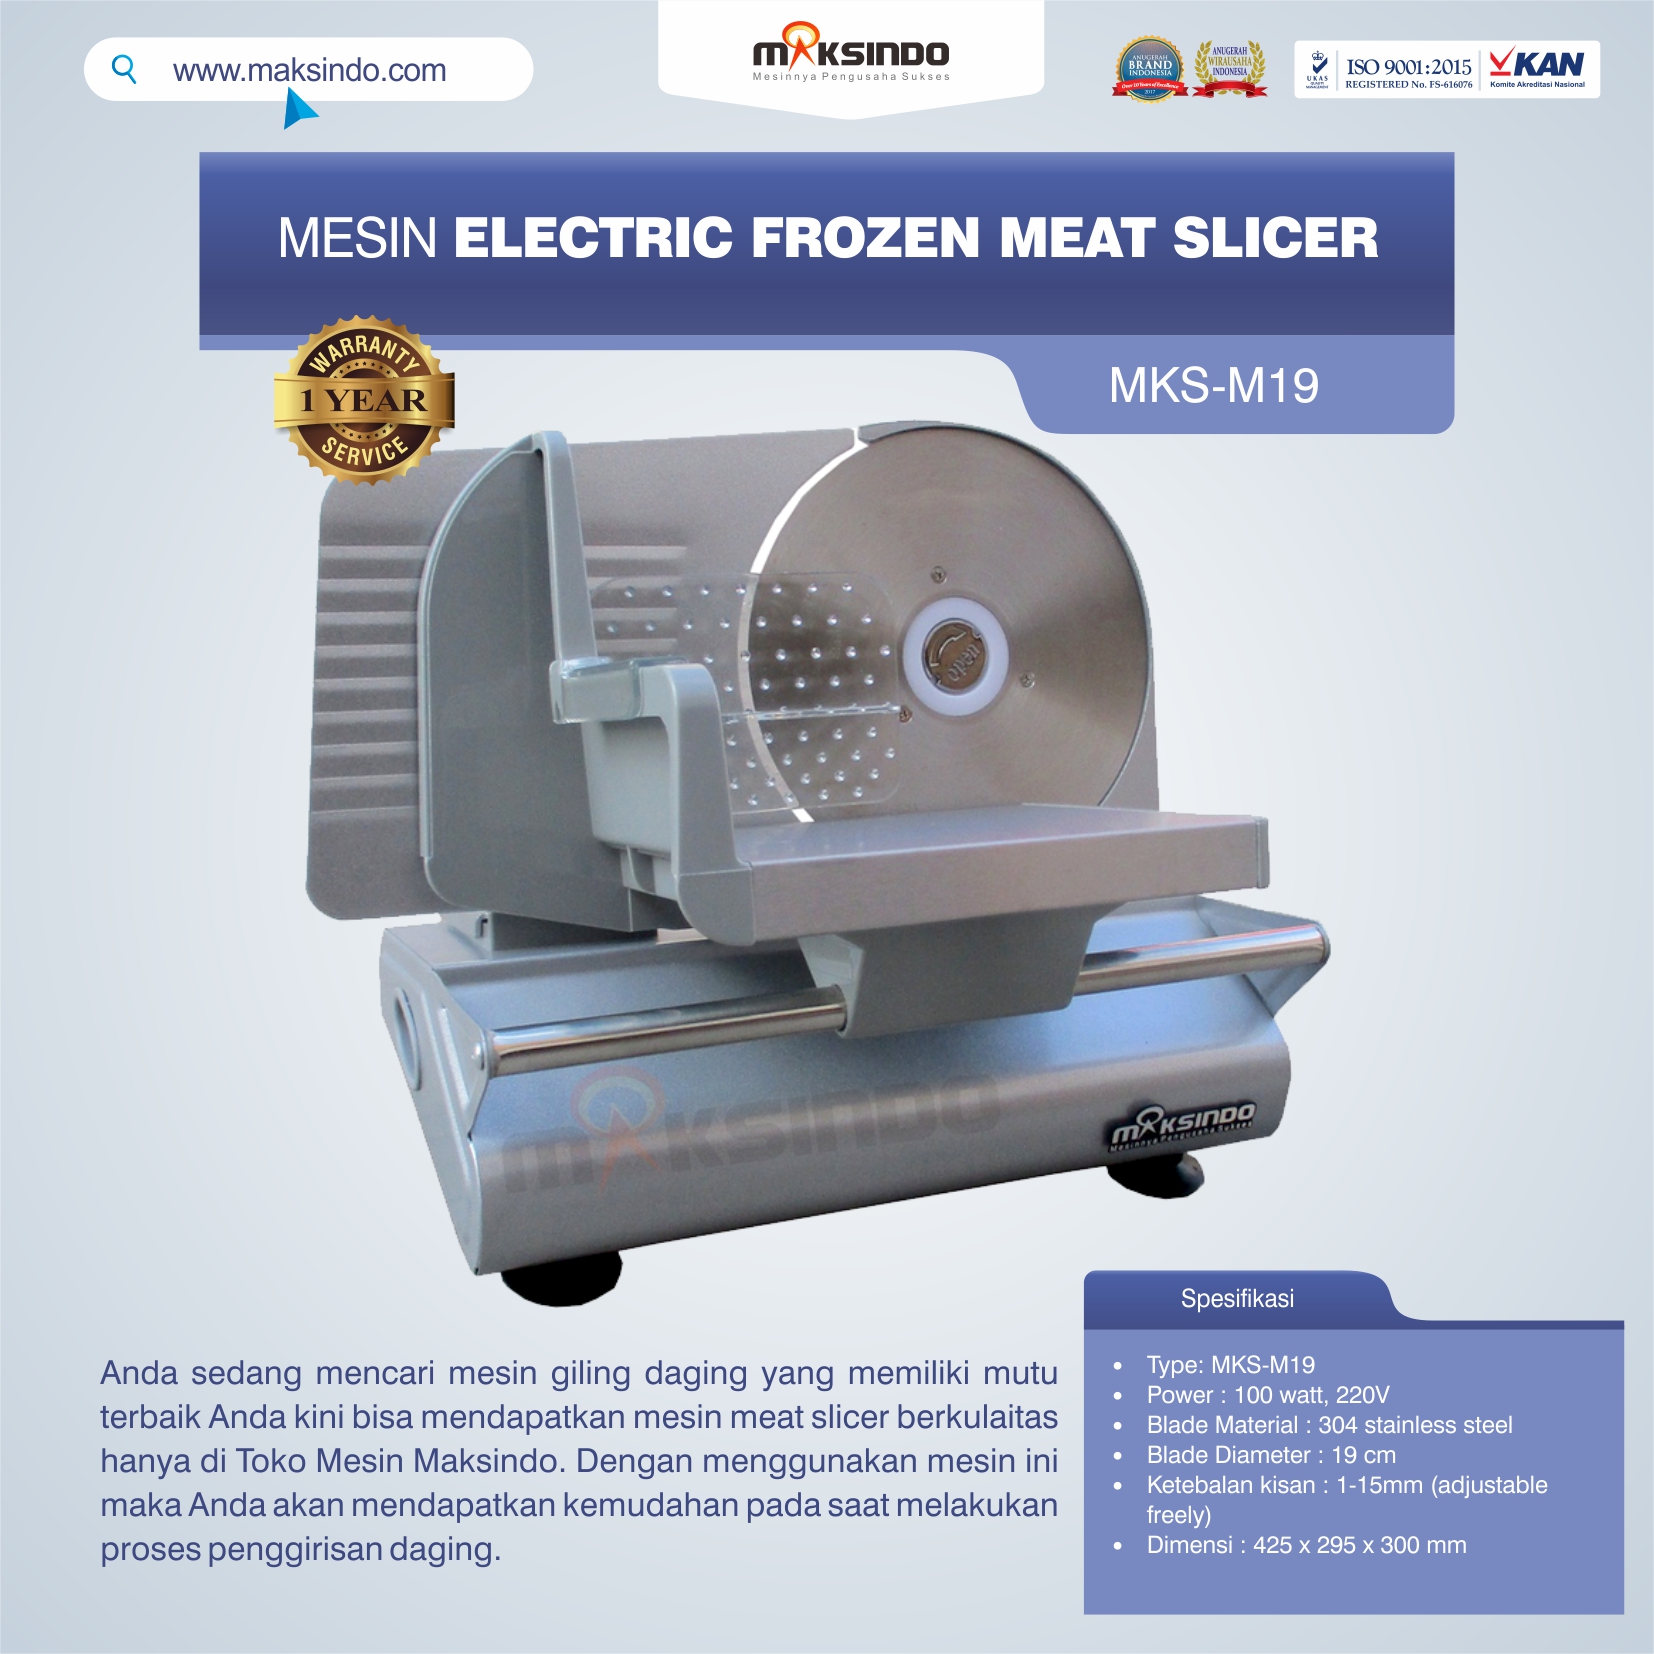 Jual Mesin Electric Frozen Meat Slicer MKS-M19 di Tangerang